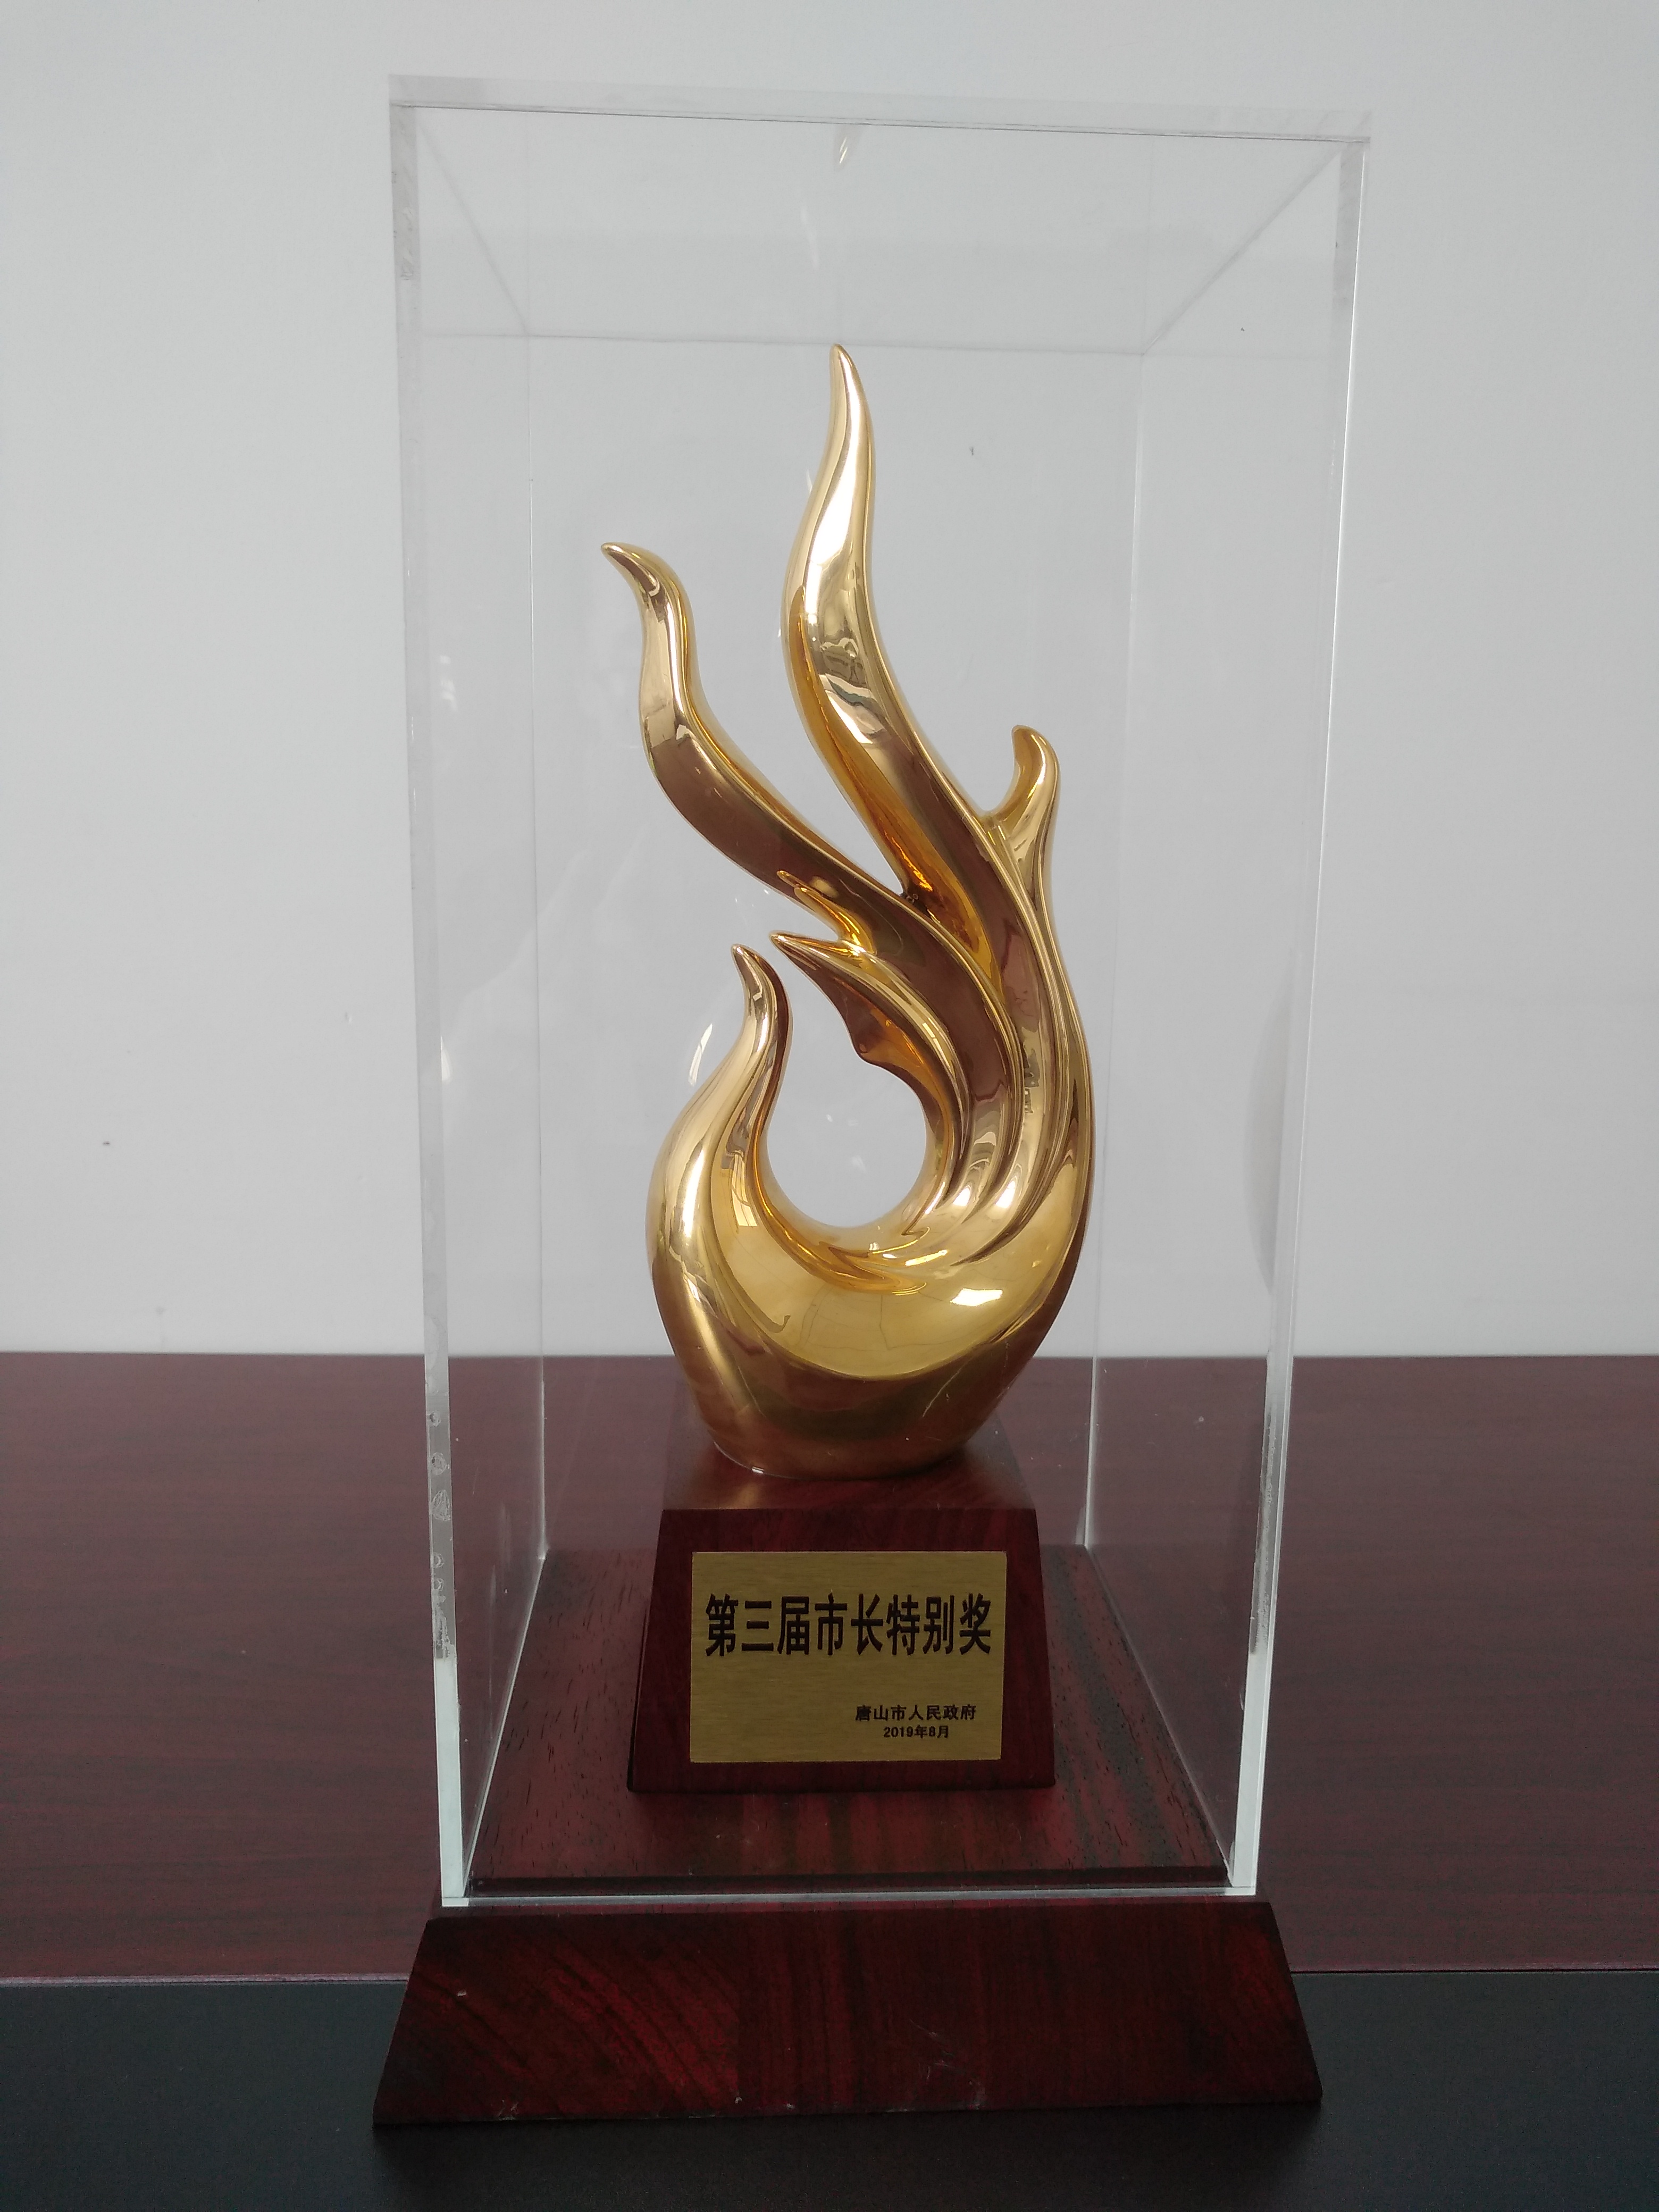 2019年8月21日唐山市第三届市长特别奖-奖杯